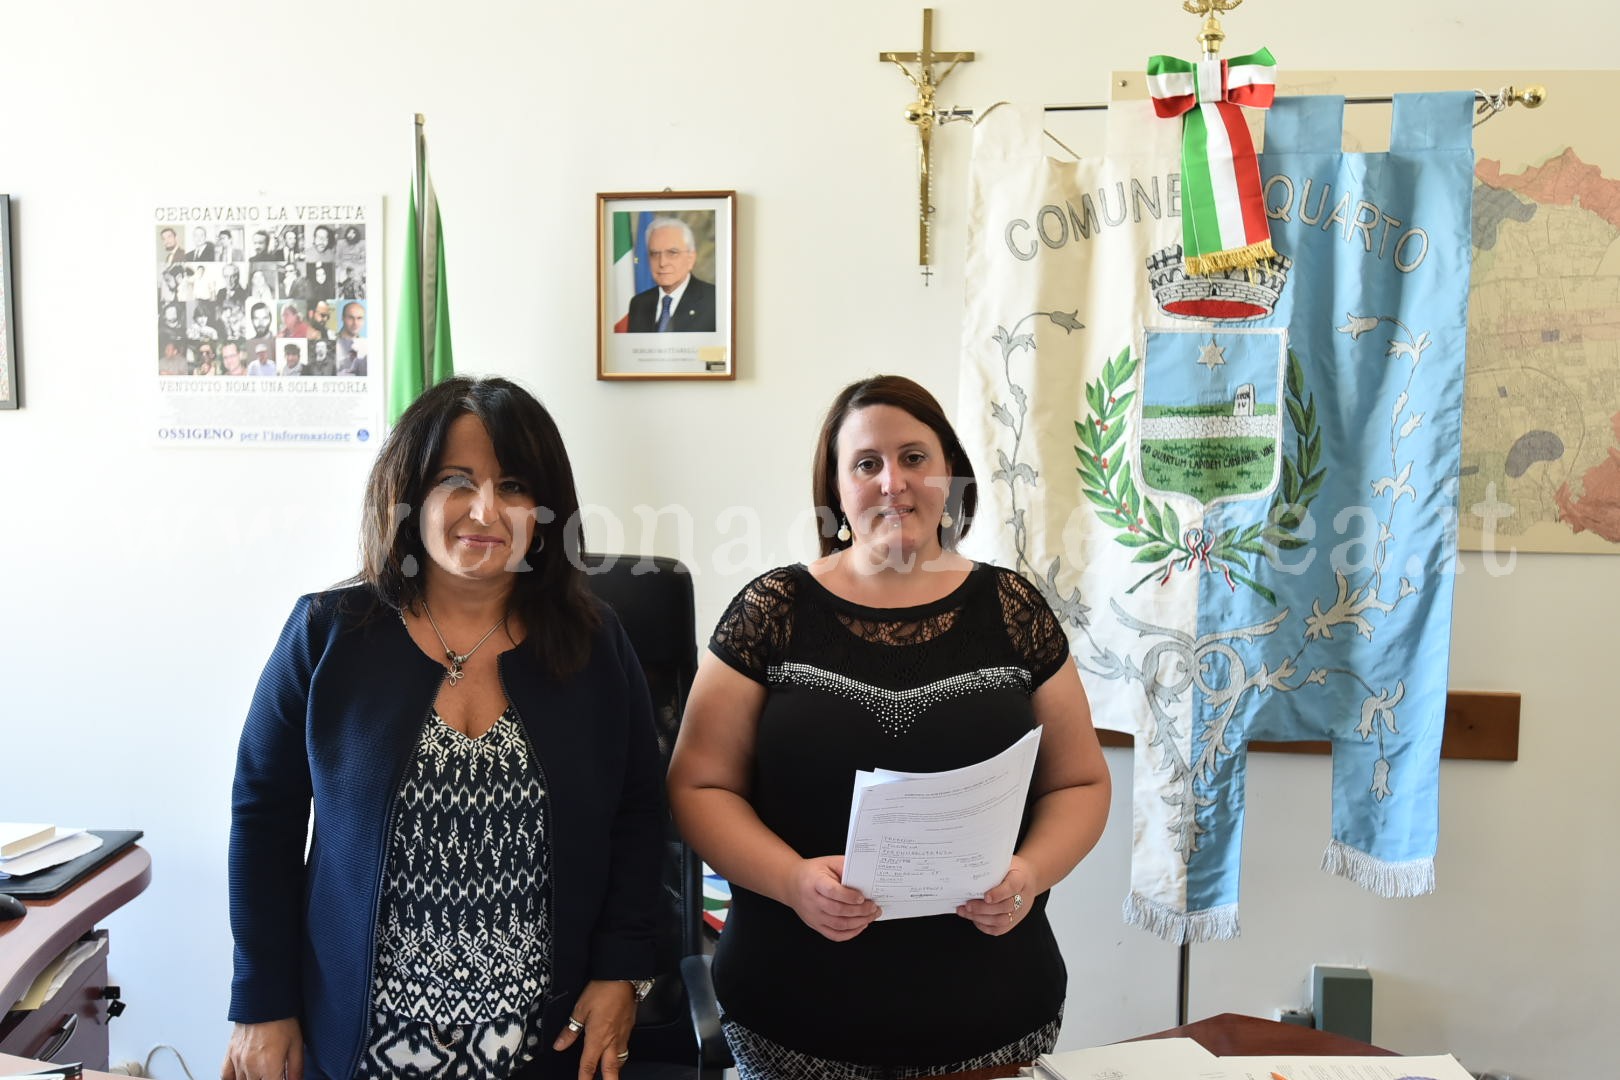 QUARTO/ Scuola negata a bambino autistico: la madre incontra il sindaco